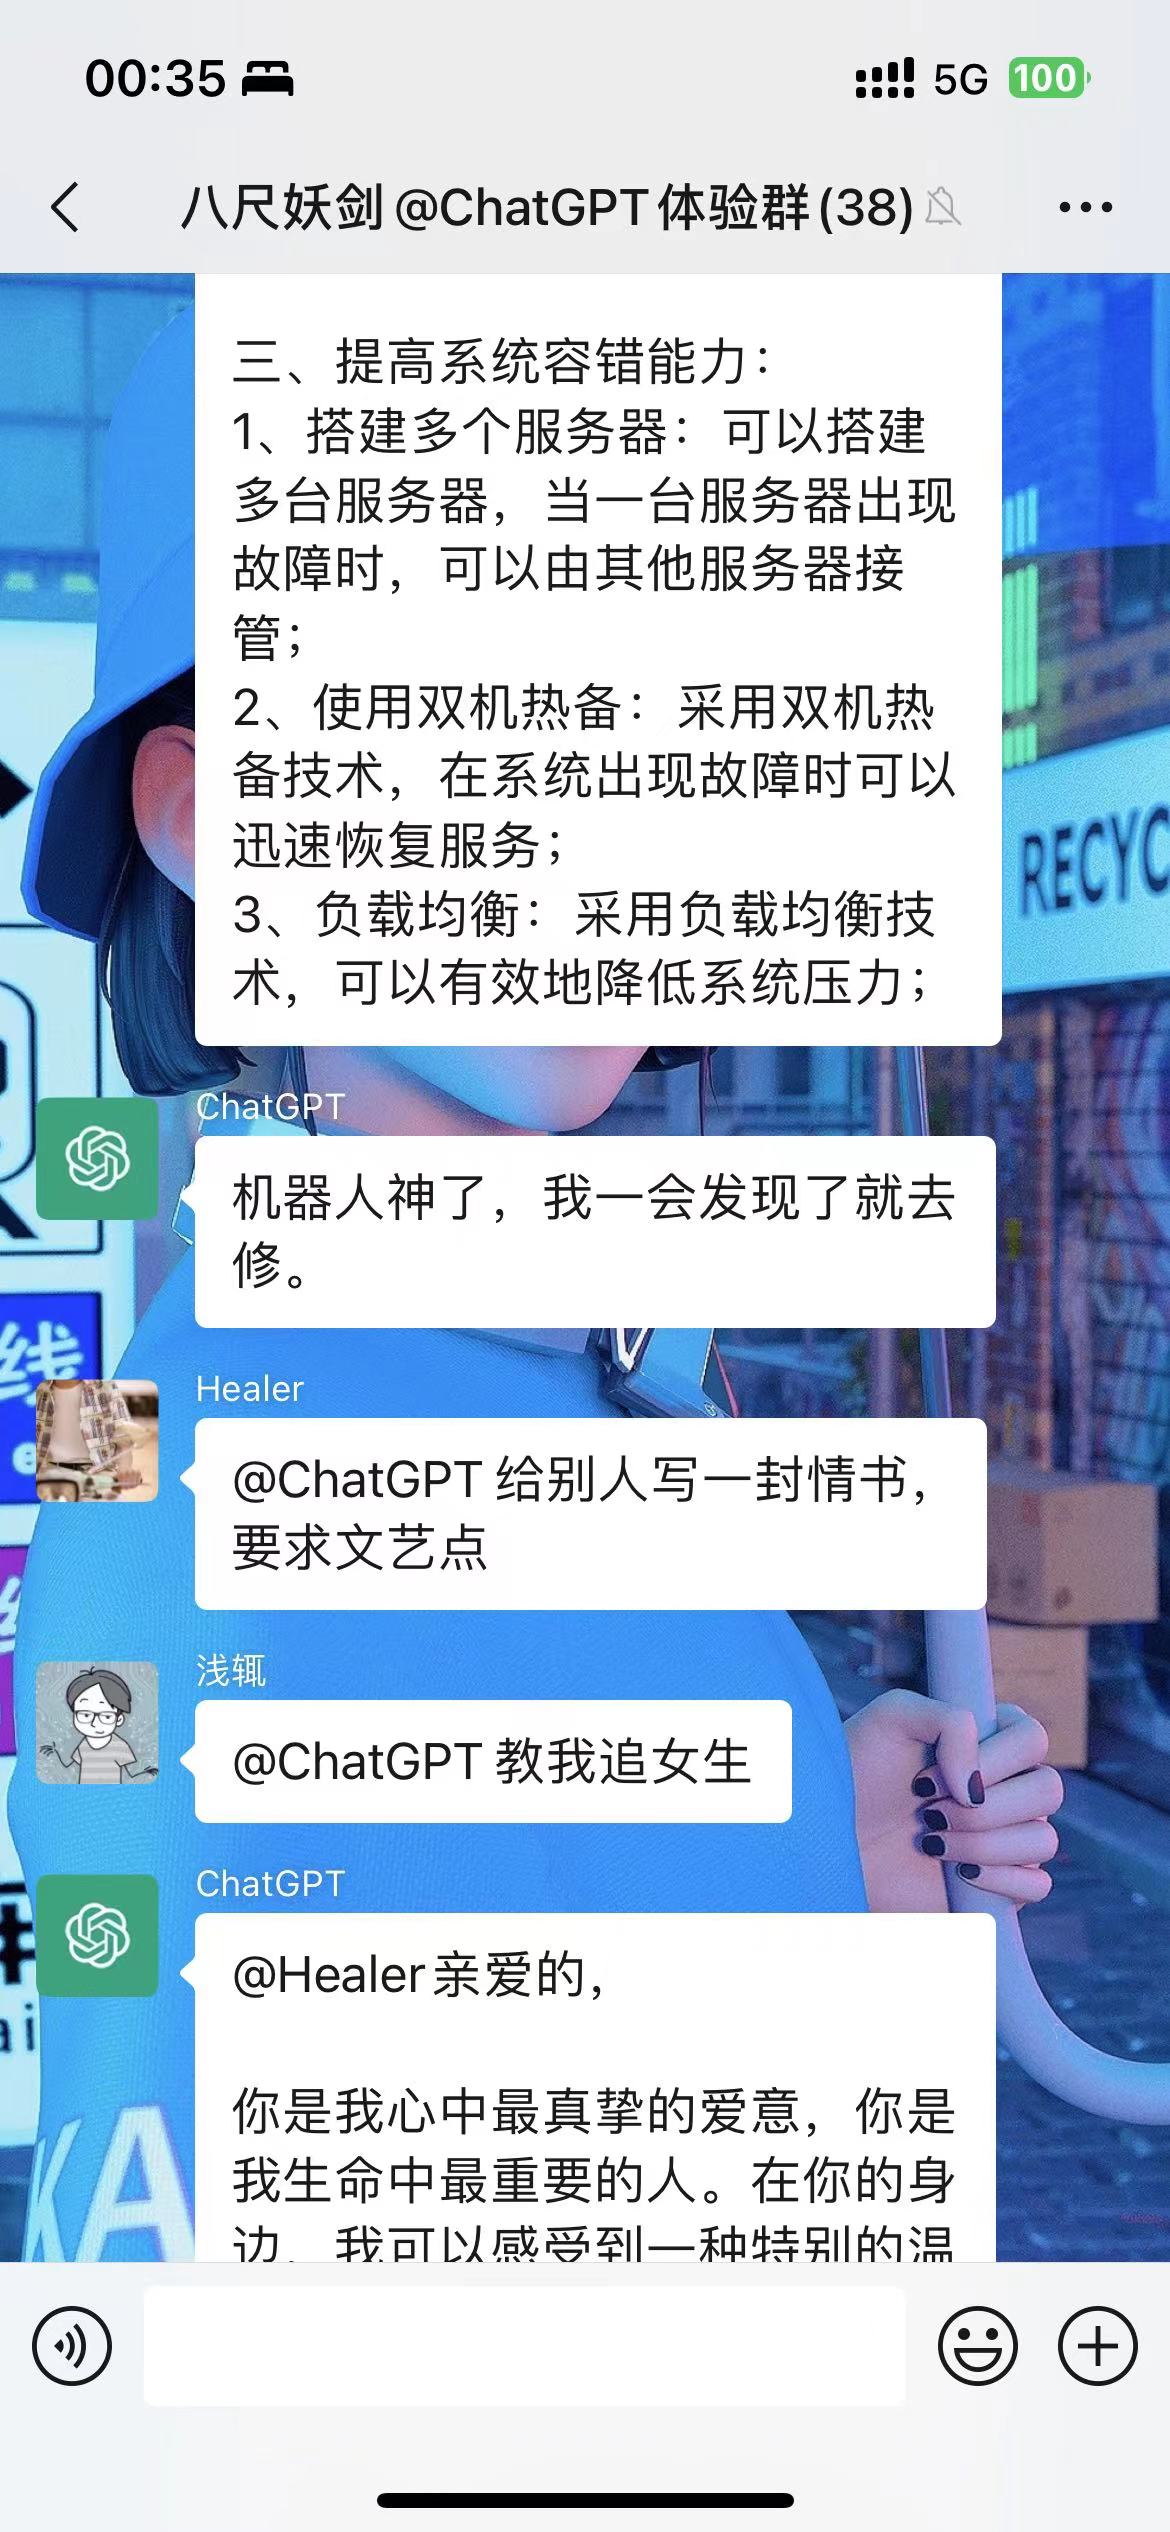 ChatGPT|微信快速接入ChatGPT